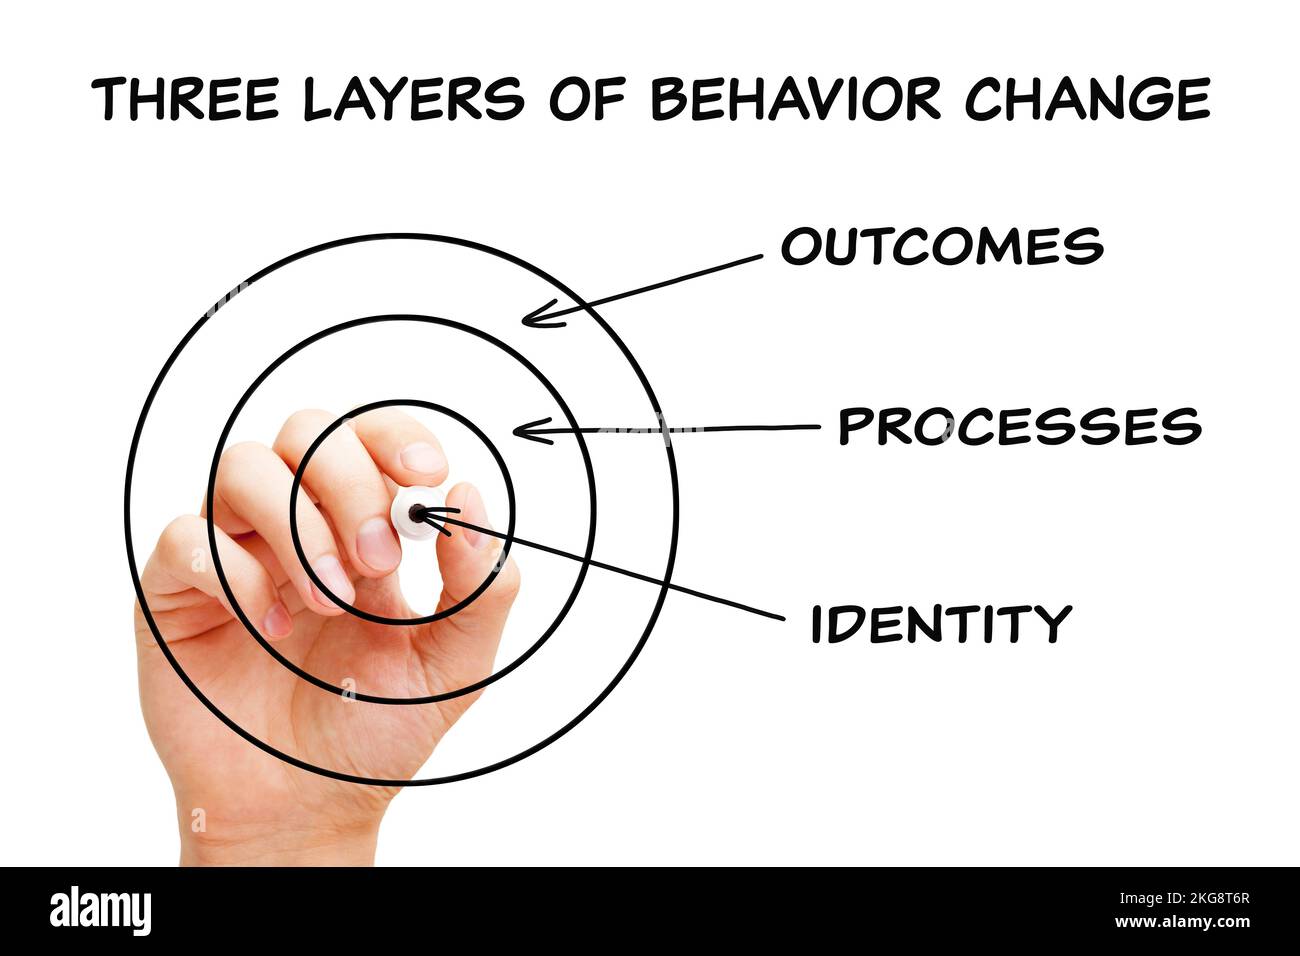 Handzeichnen а Konzept der drei Ebenen der Verhaltensänderung – Identität, Prozesse und Ergebnisse mit schwarzem Marker auf transparentem Wischbrett. Stockfoto